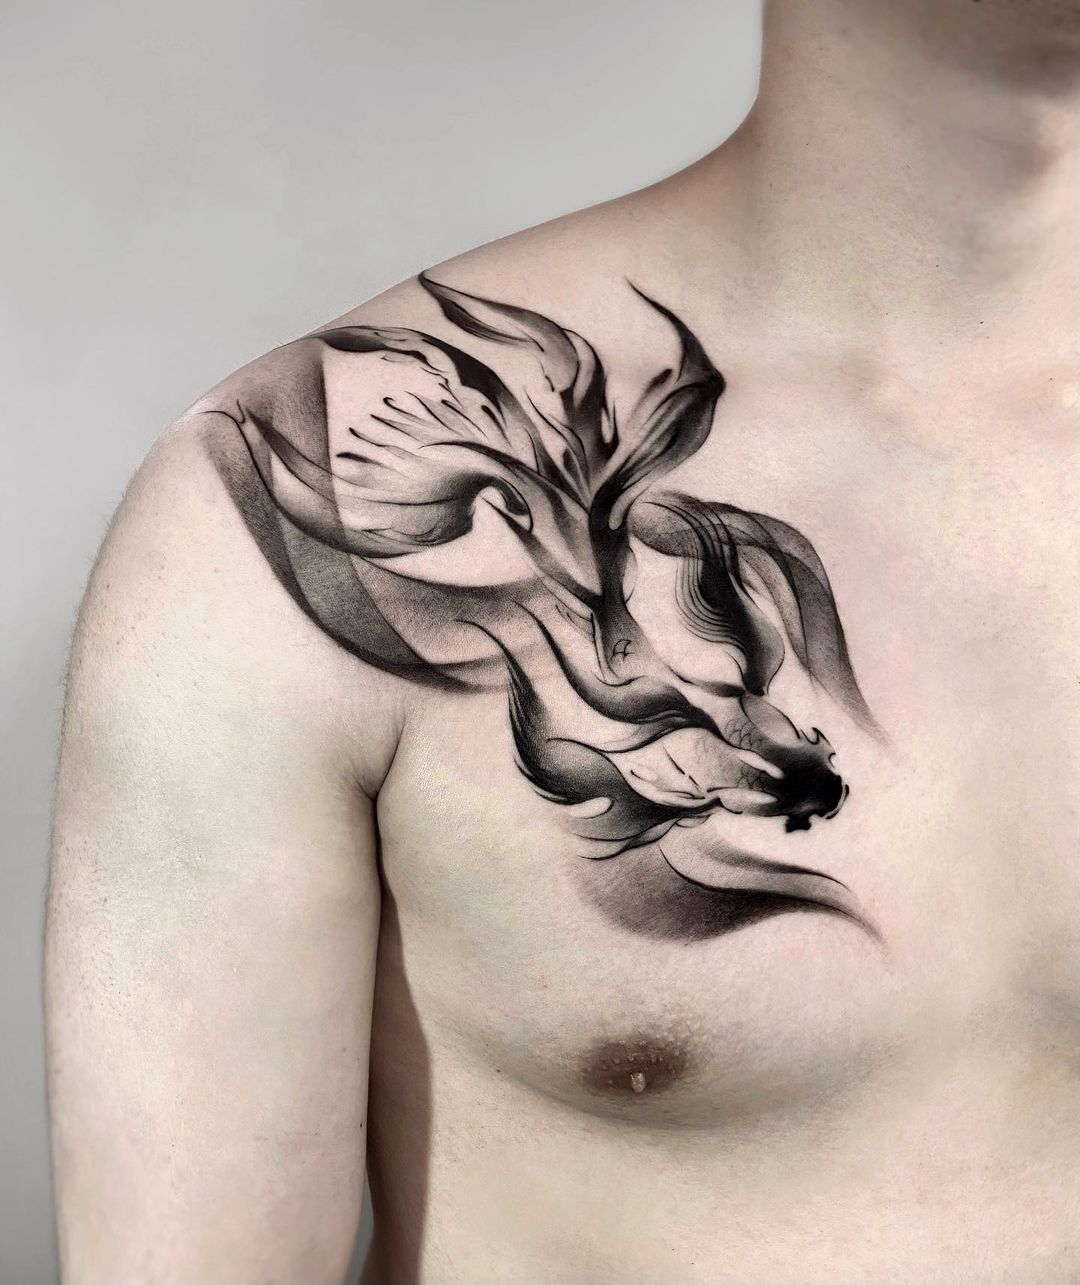 Abstrcat koi fish tattoo by jing.tattoo